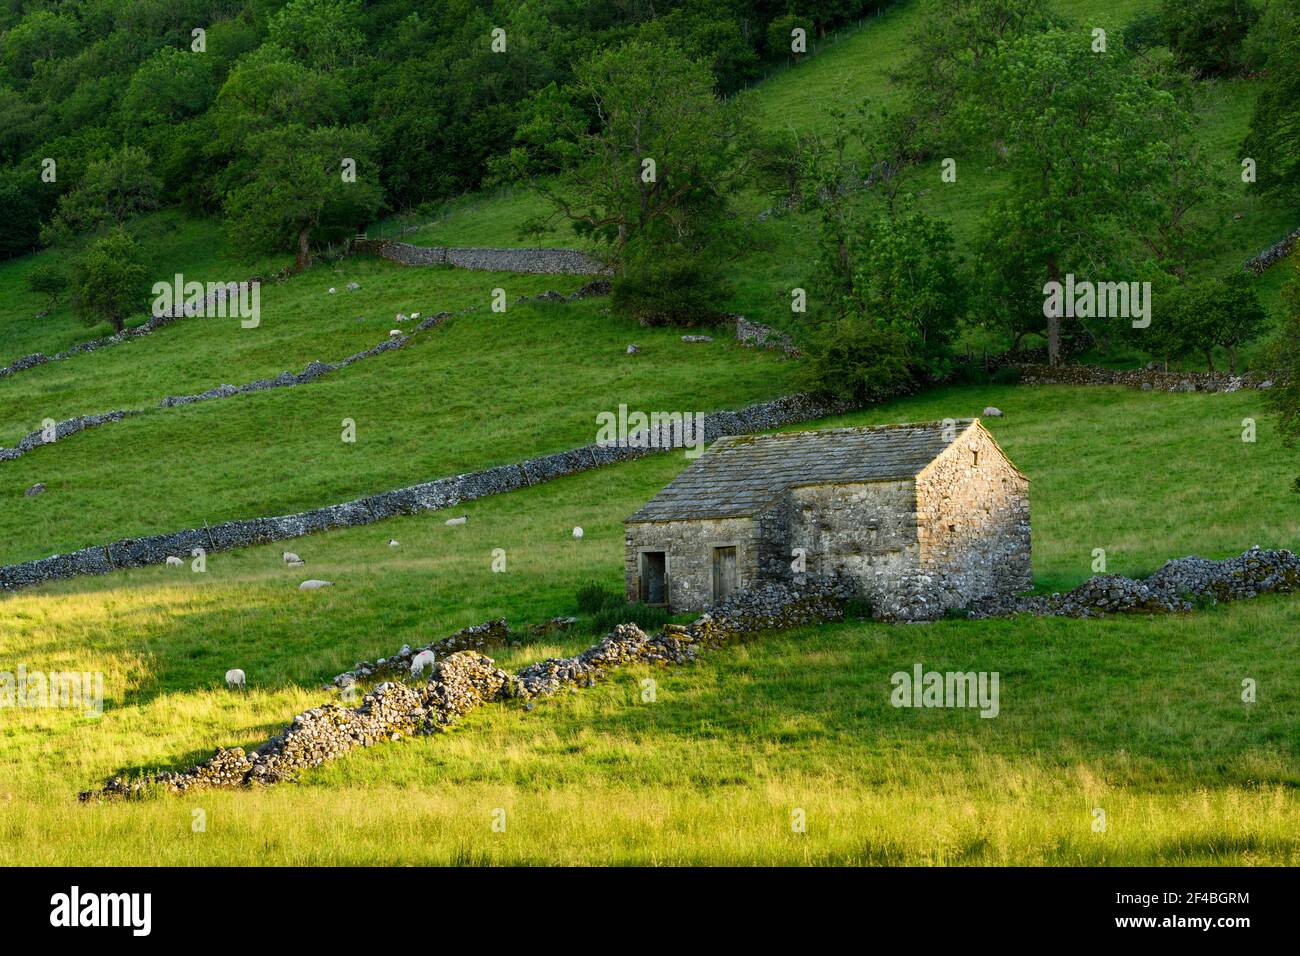 Bella campagna soleggiata Wharfedale (vecchio fienile rustico, ripido pendio collinare, muri a secco, pecore, pascoli agricoli) - Yorkshire Dales, Inghilterra, Regno Unito Foto Stock